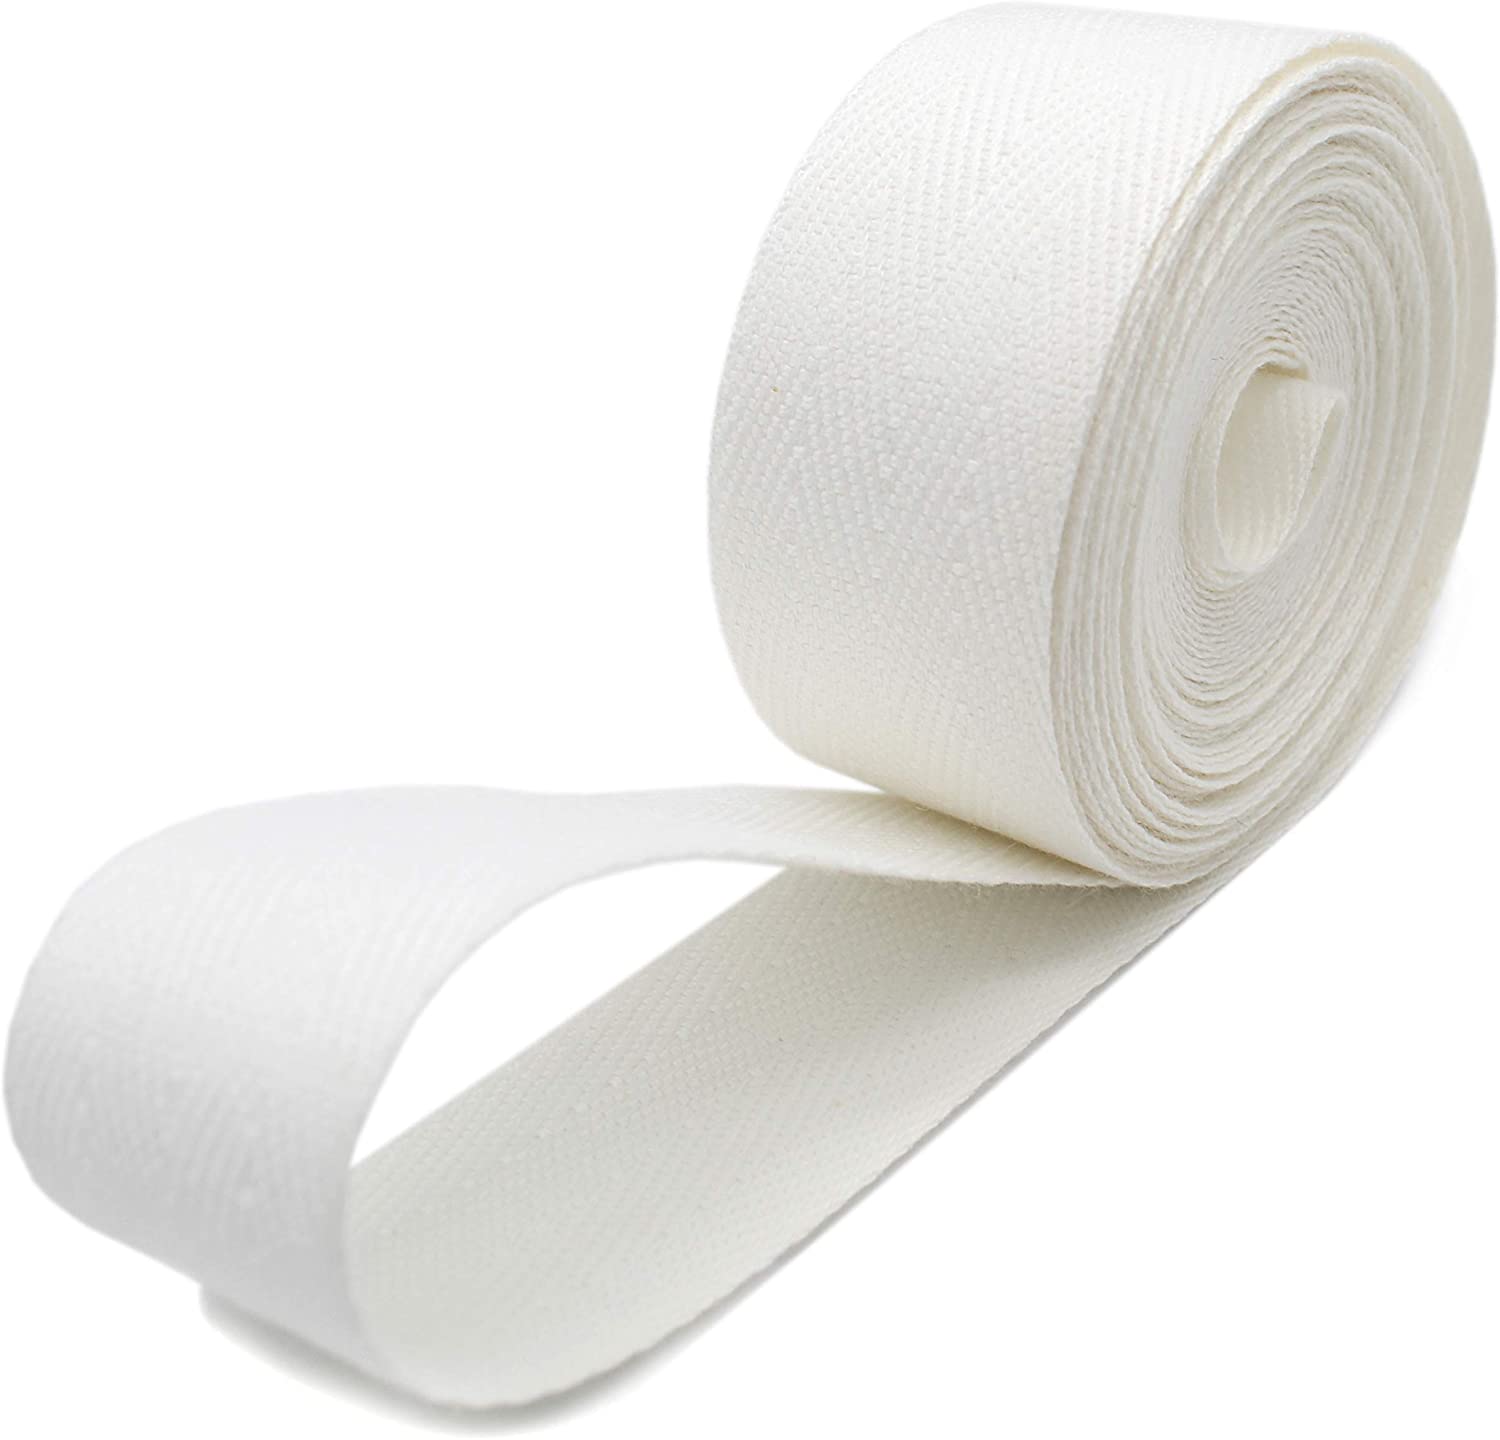 Cotton Twill Tape 36 Yard Roll